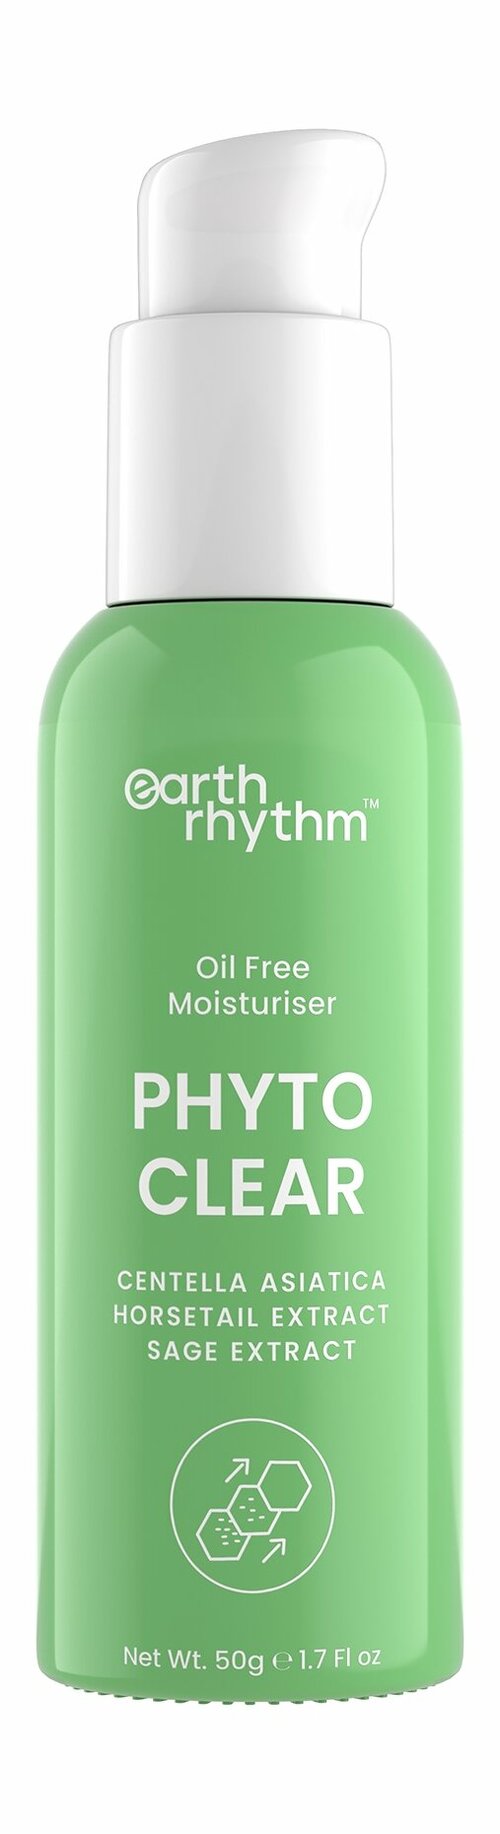 EARTH RHYTHM Phyto Clear Крем для лица с центеллой азиатской и шалфеем увлажняющий, 50 гр